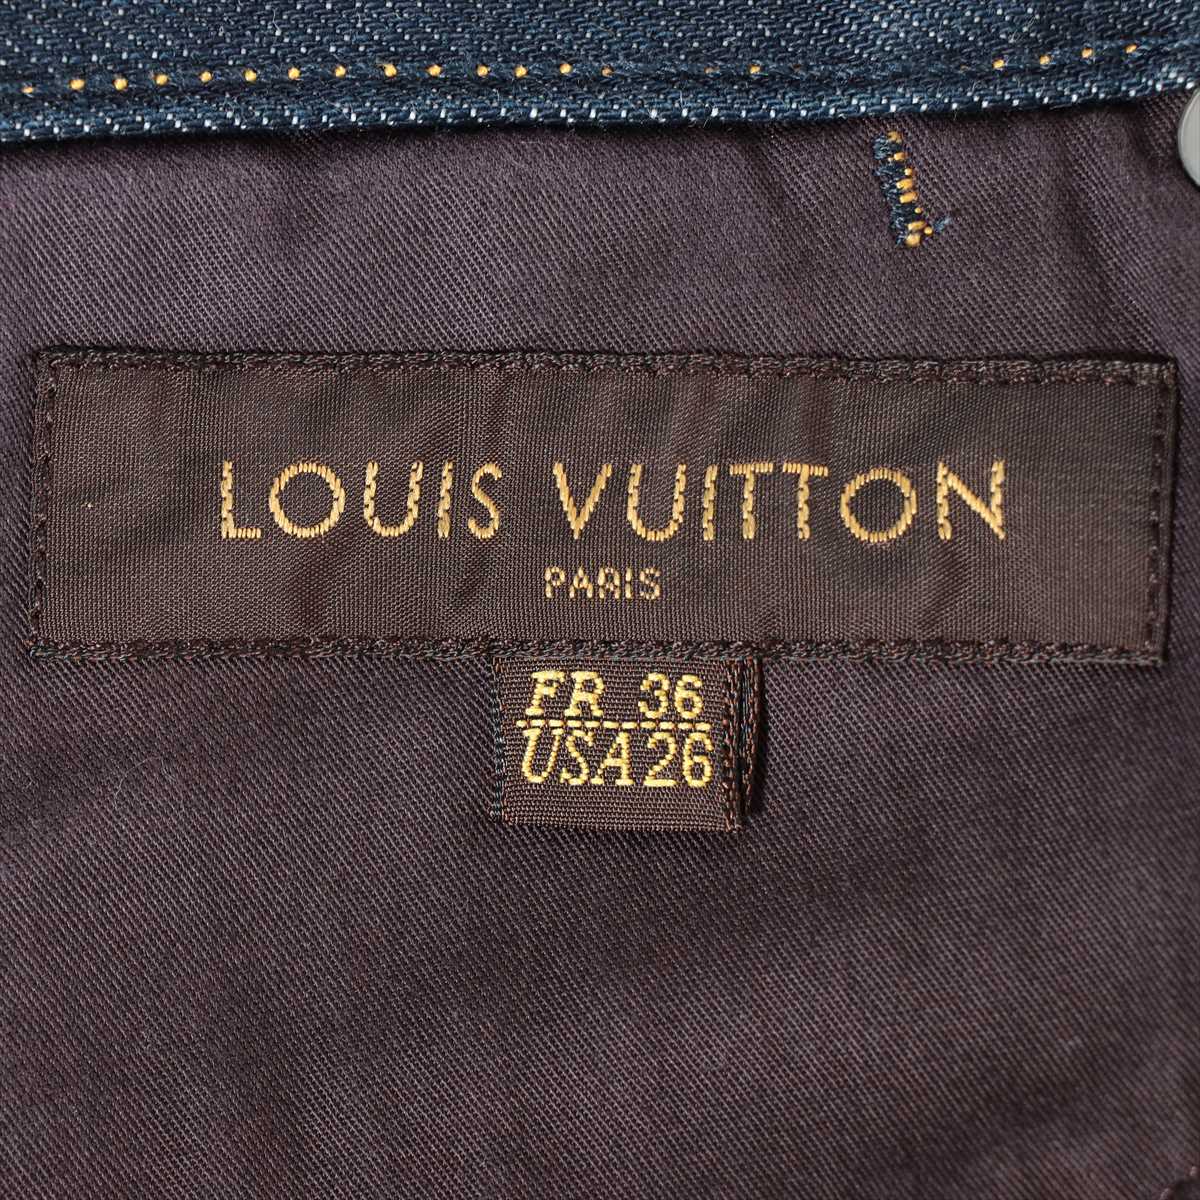 Louis Vuitton Cotton Denim pants US26 Men's Navy blue  Logo embroidery